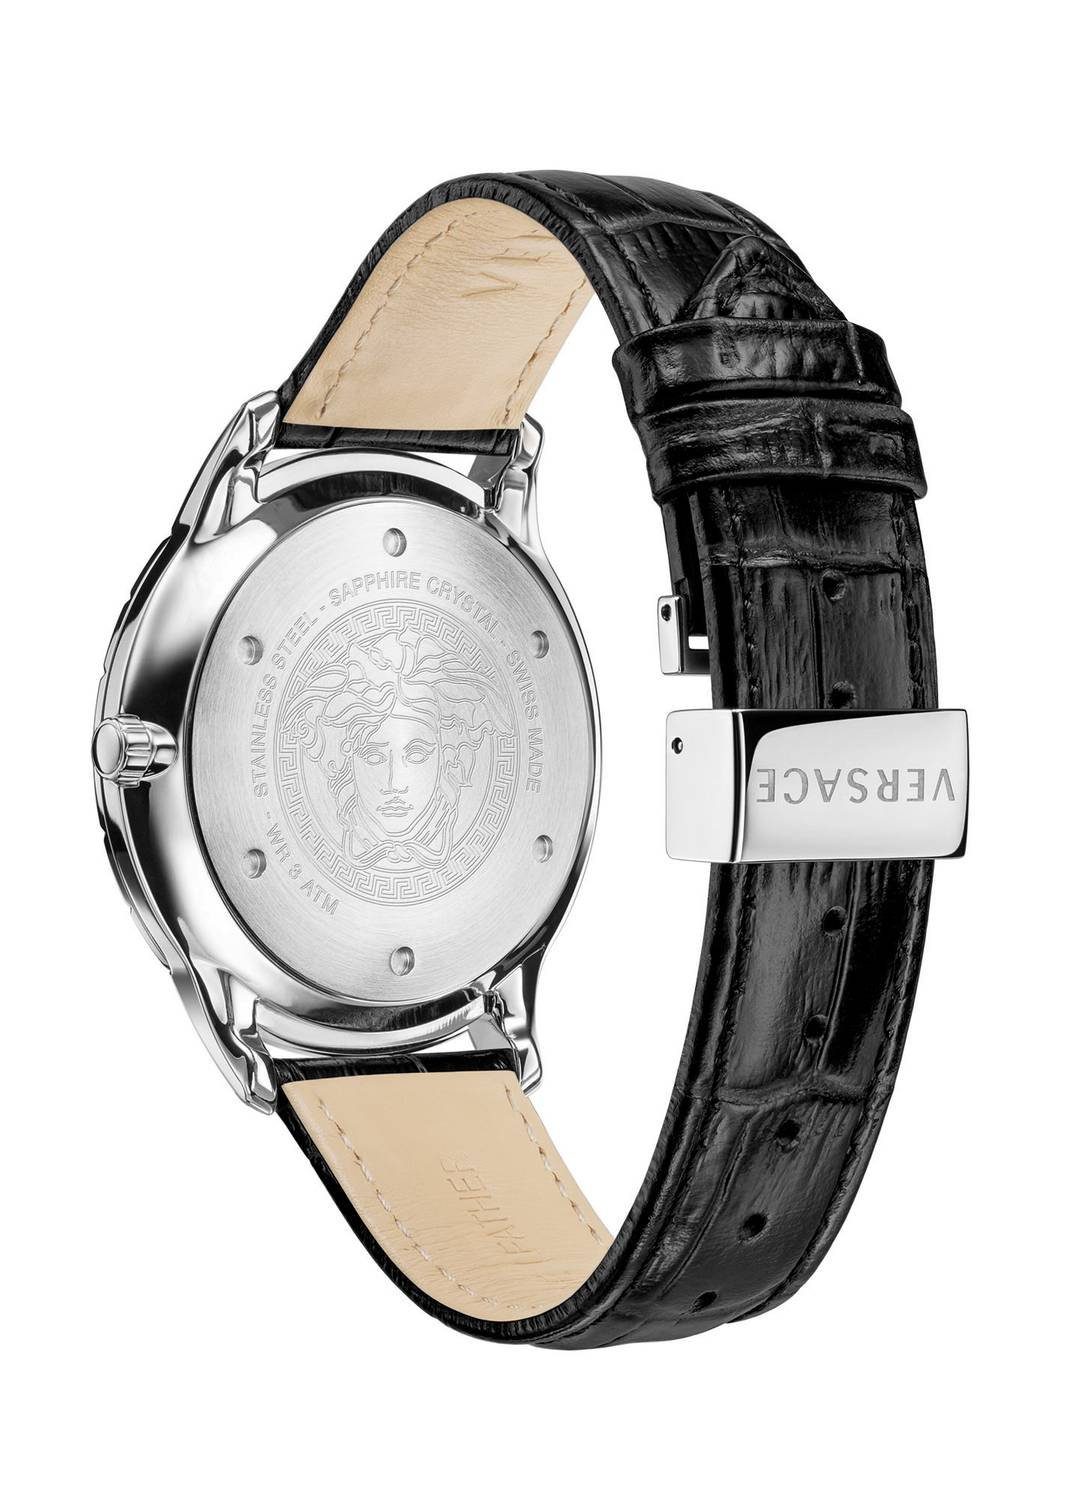 Schweizer Uhr Univers Versace